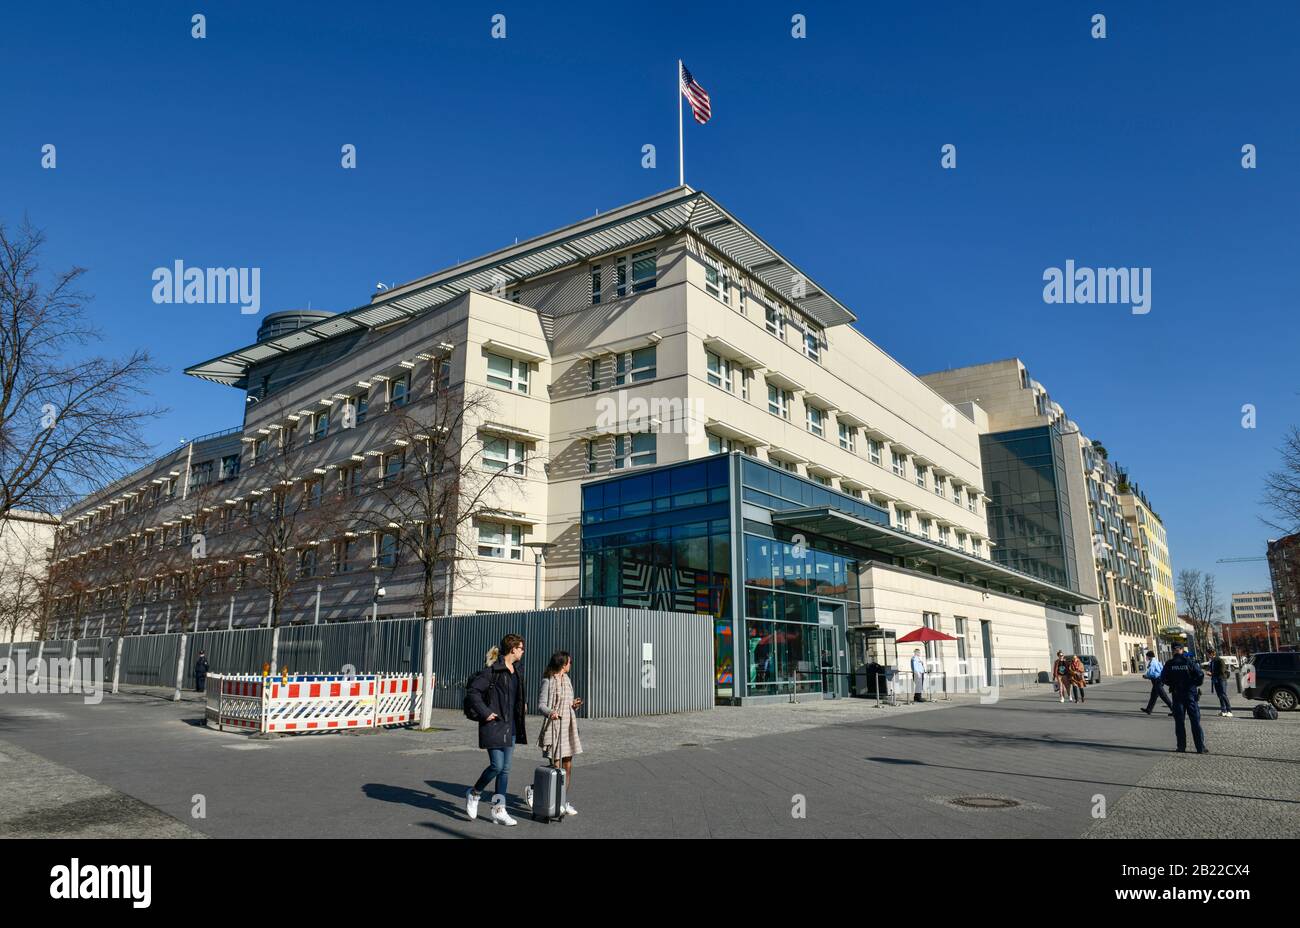 Botschaft Der Vereinigten Staaten Von Amerika, Ebertstraße, Mitte, Berlín, Alemania Foto de stock